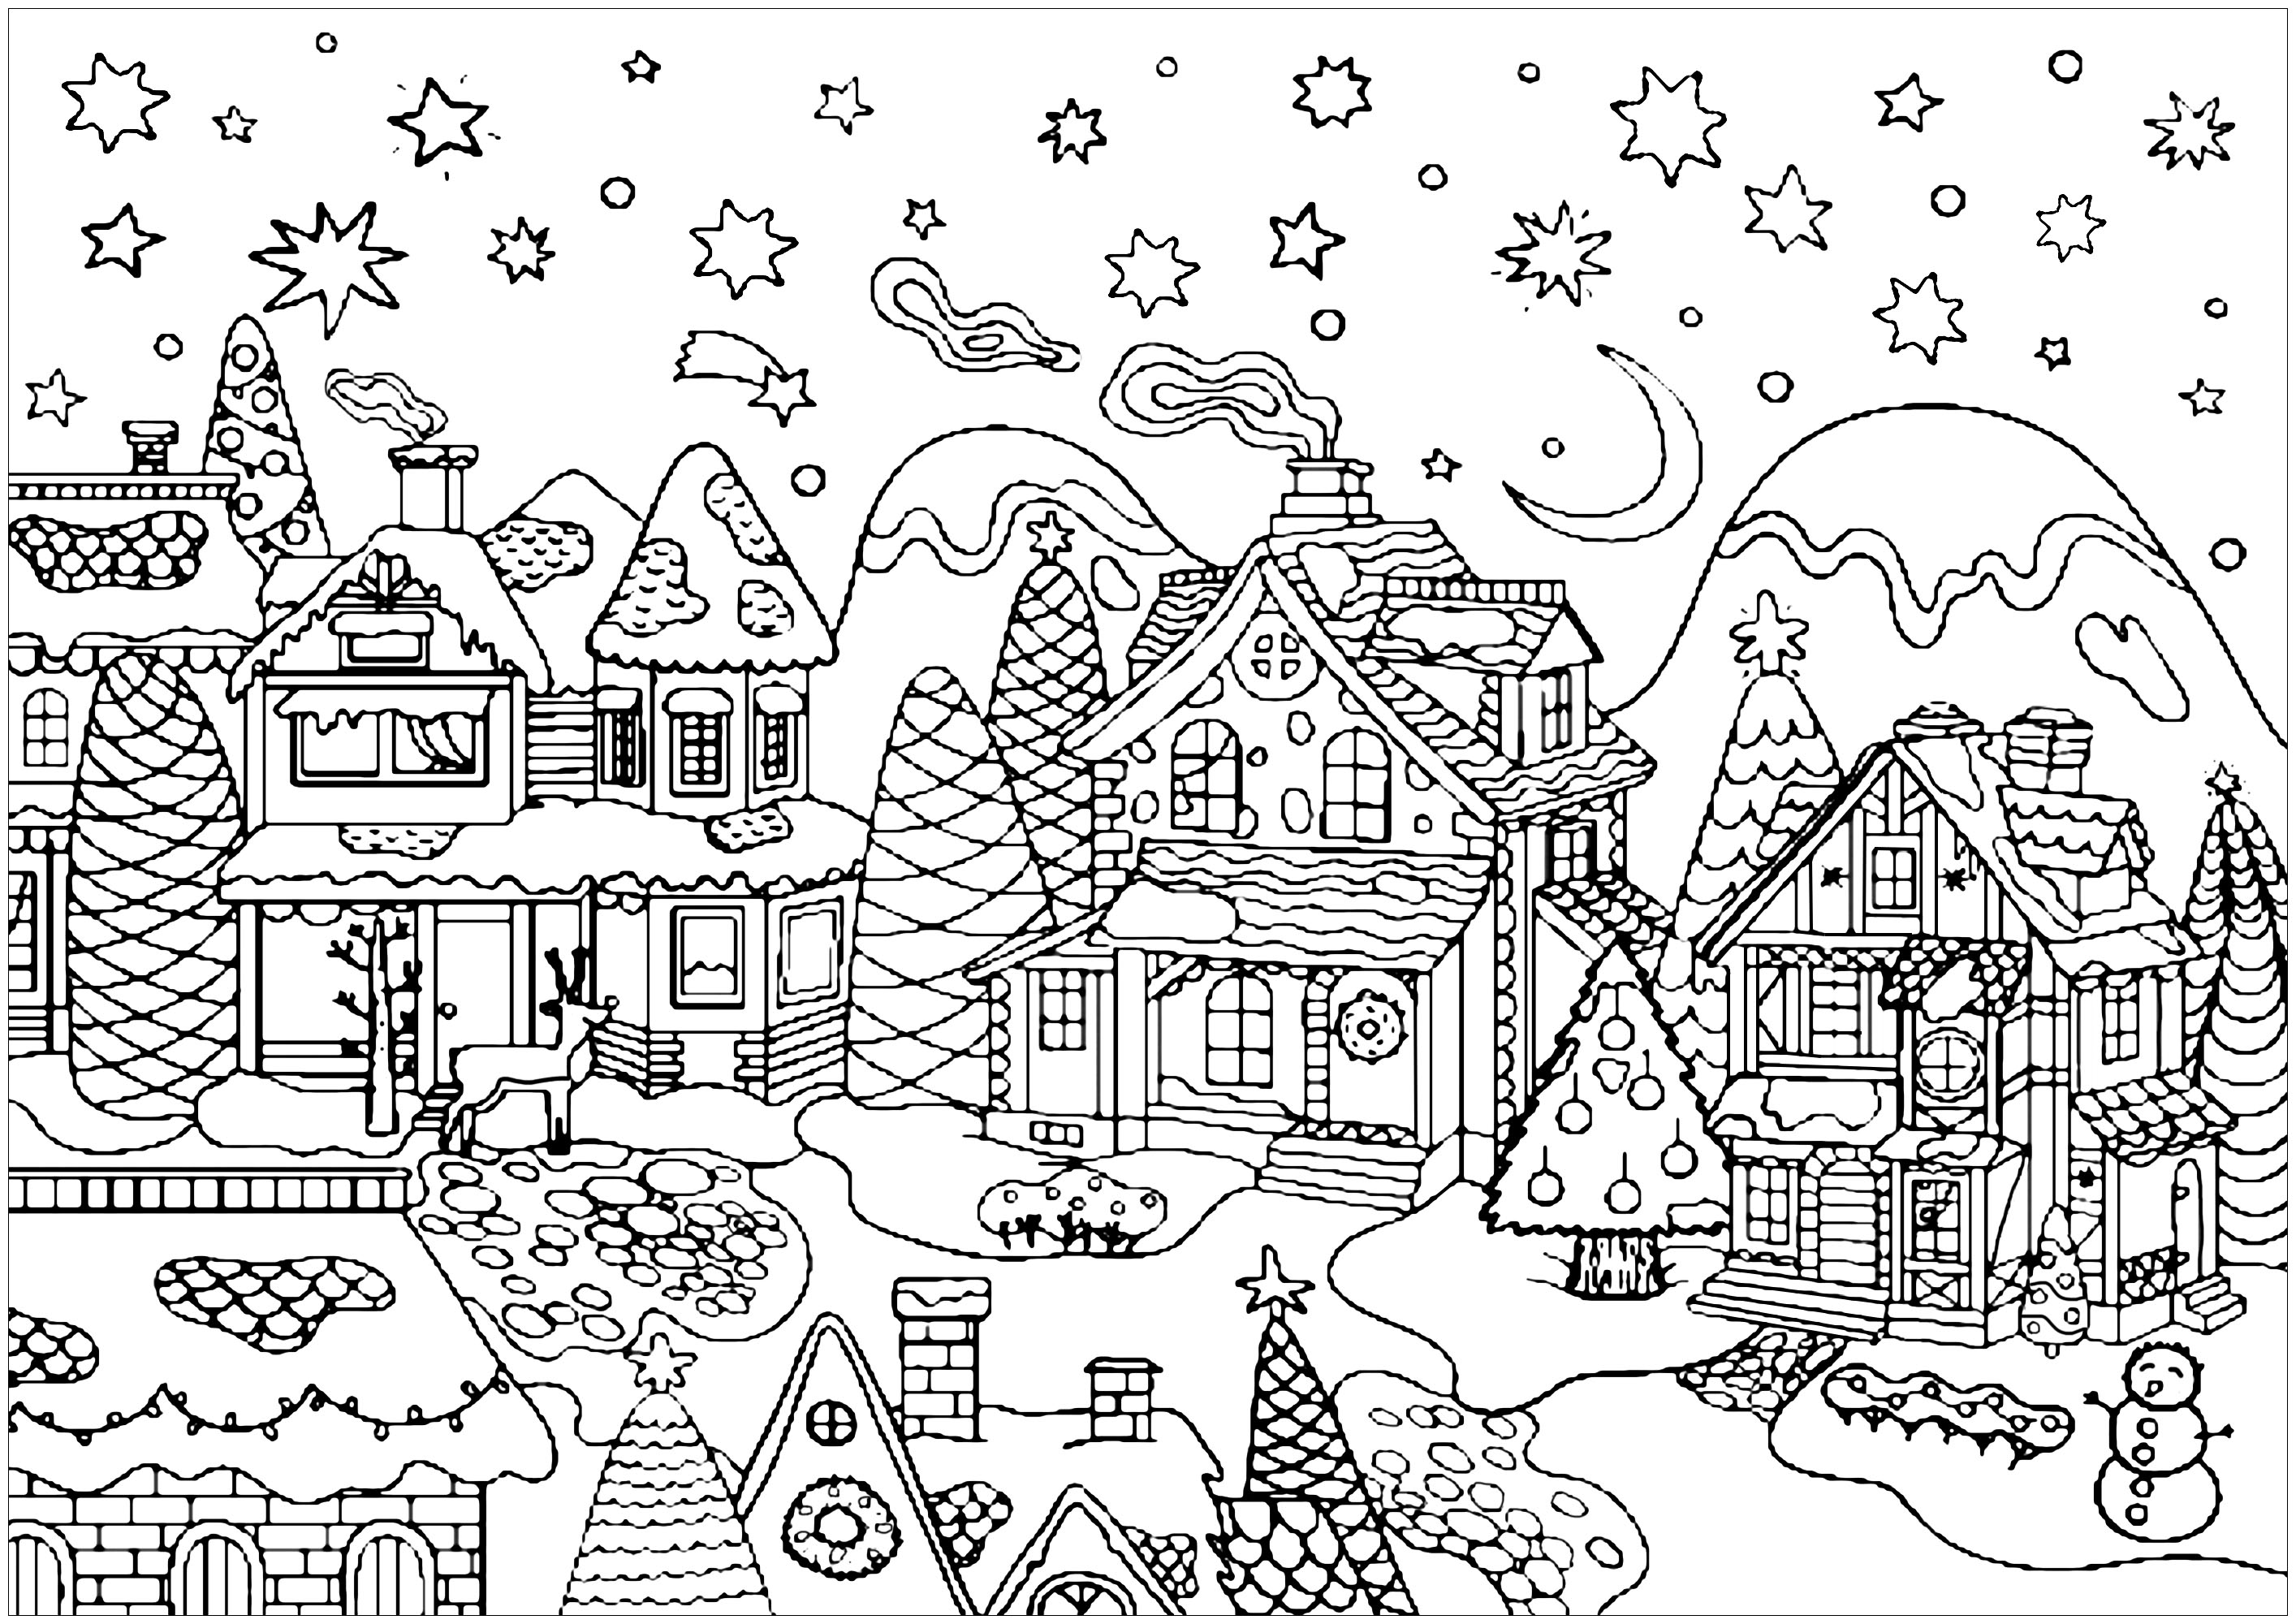 Colora todas as belas casas desta bonita aldeia de neve pronta para celebrar o Natal